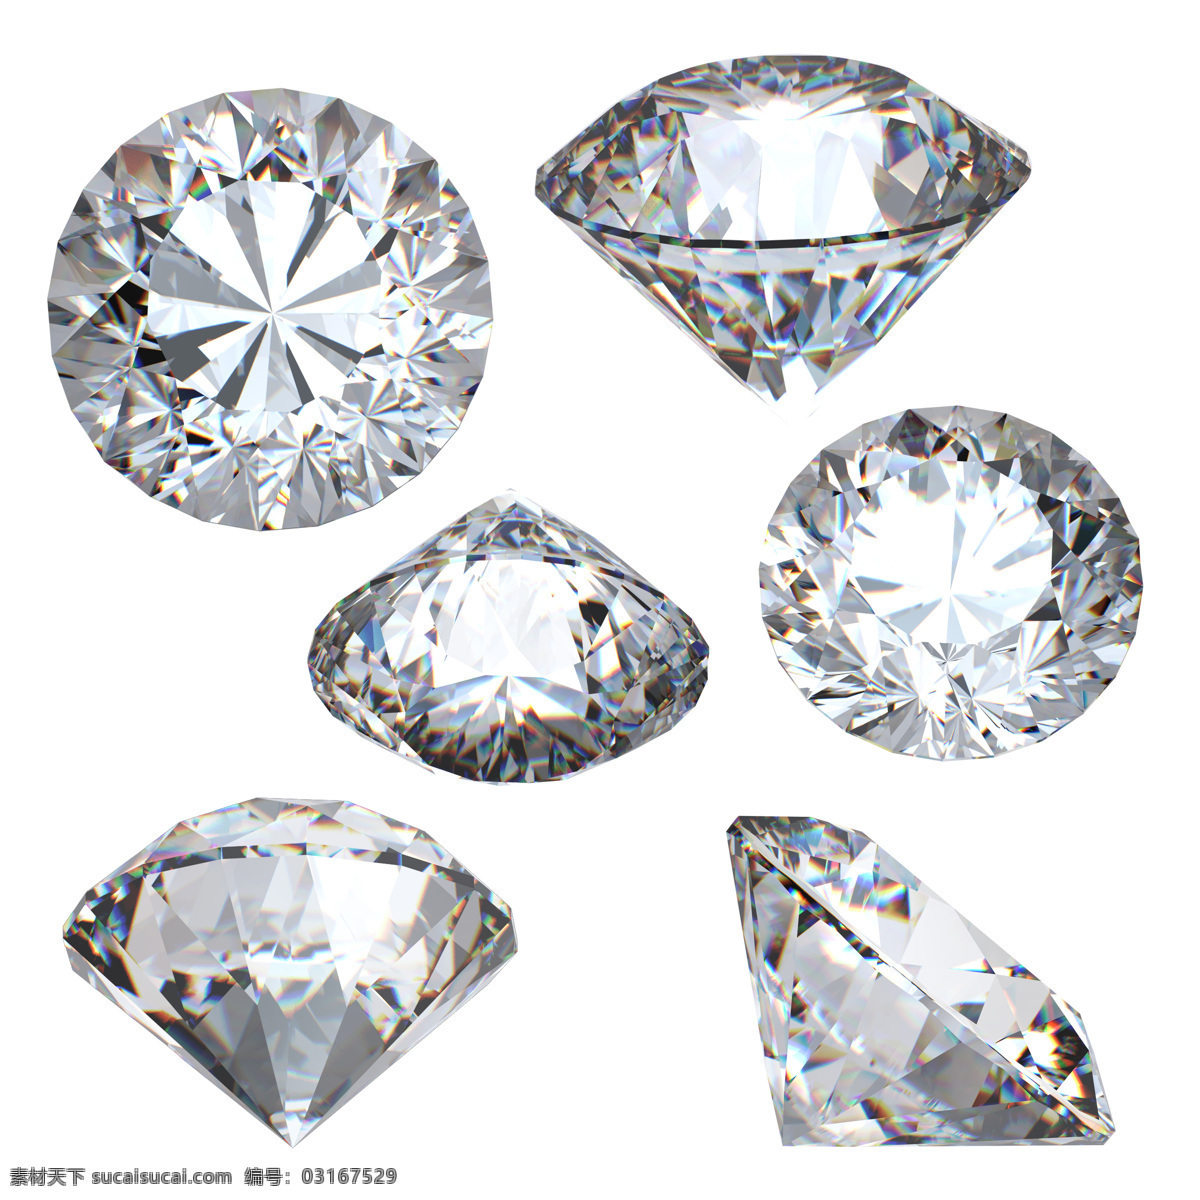 钻石珠宝摄影 钻石 宝石 钻石珠宝 珠宝首饰 珠宝服饰 生活百科 白色